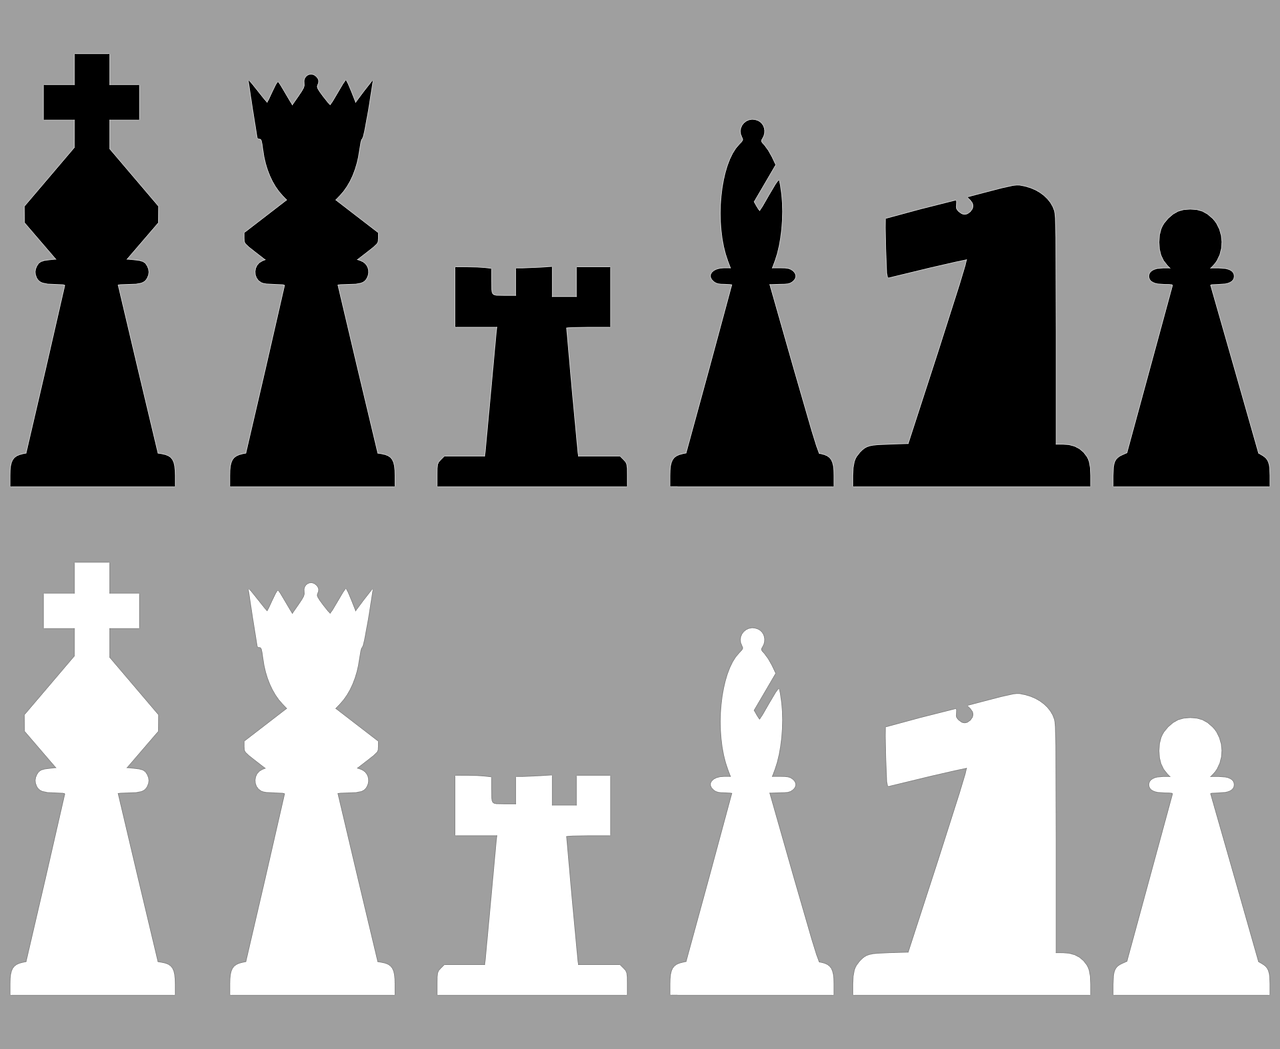 Šachmatai, Meeples, Juoda, Balta, Karalius, Karalienė, Rook, Pėstininkas, Vyskupas, Riteris